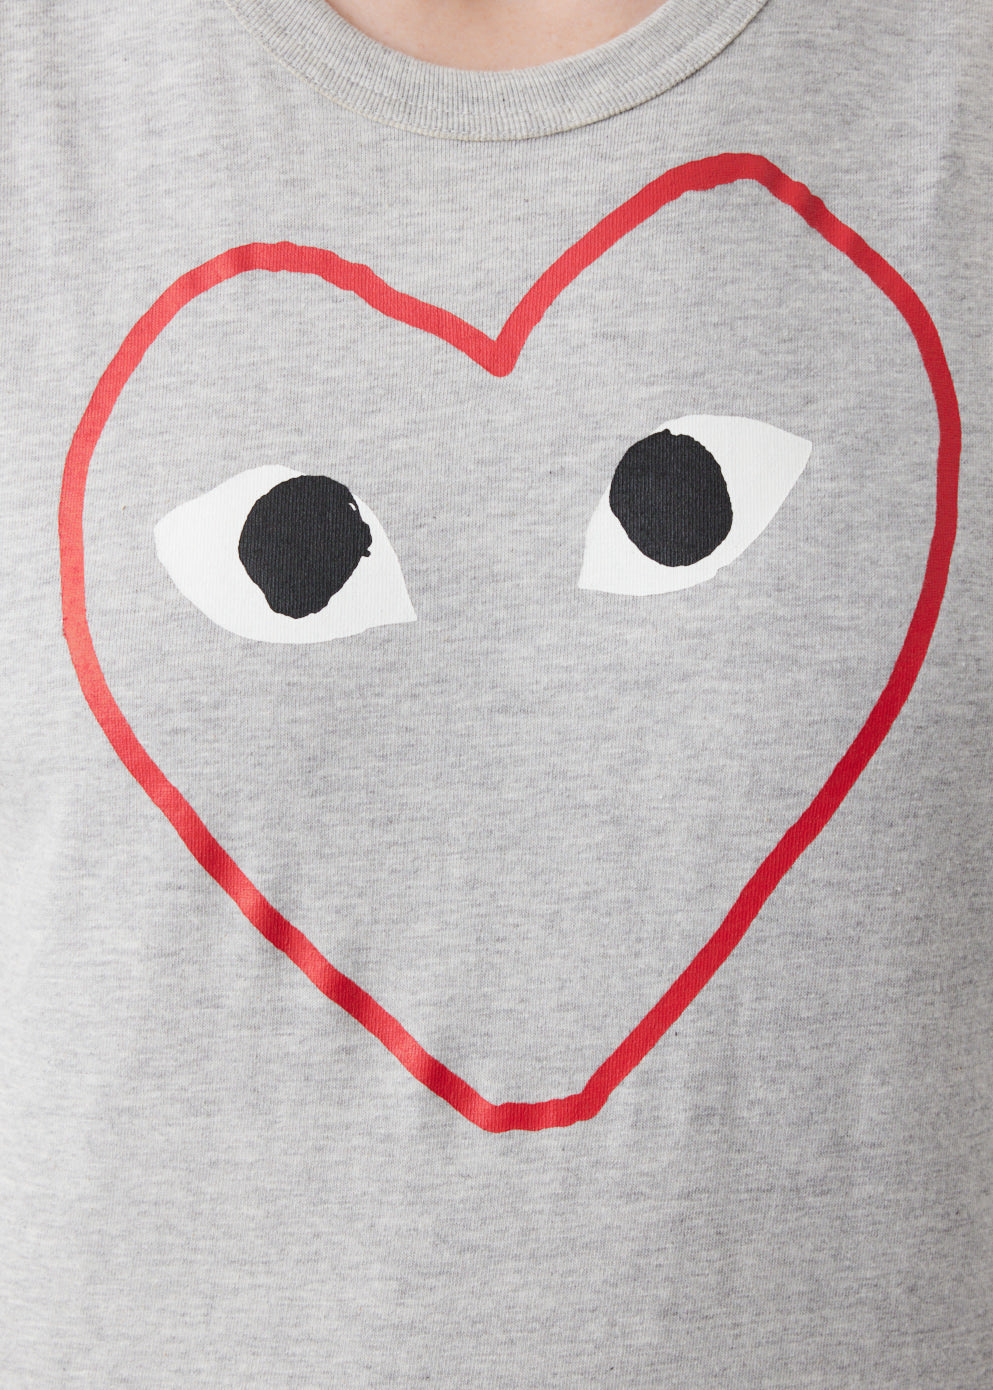 T265 Red Heart T-Shirt